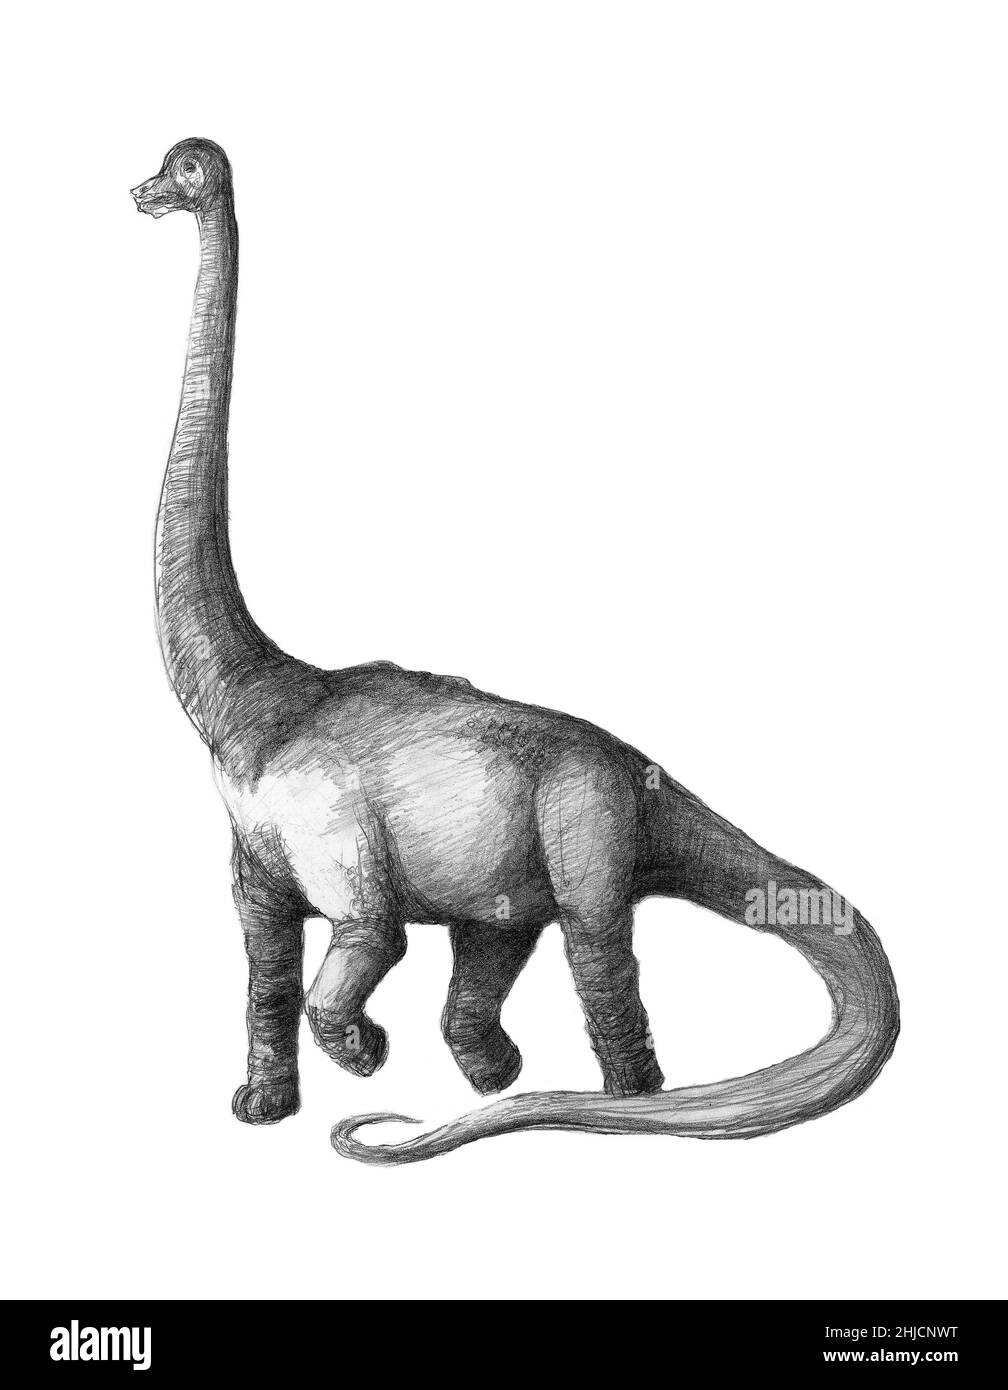 Brachiosaurus dinosaur Banque d'images noir et blanc - Alamy